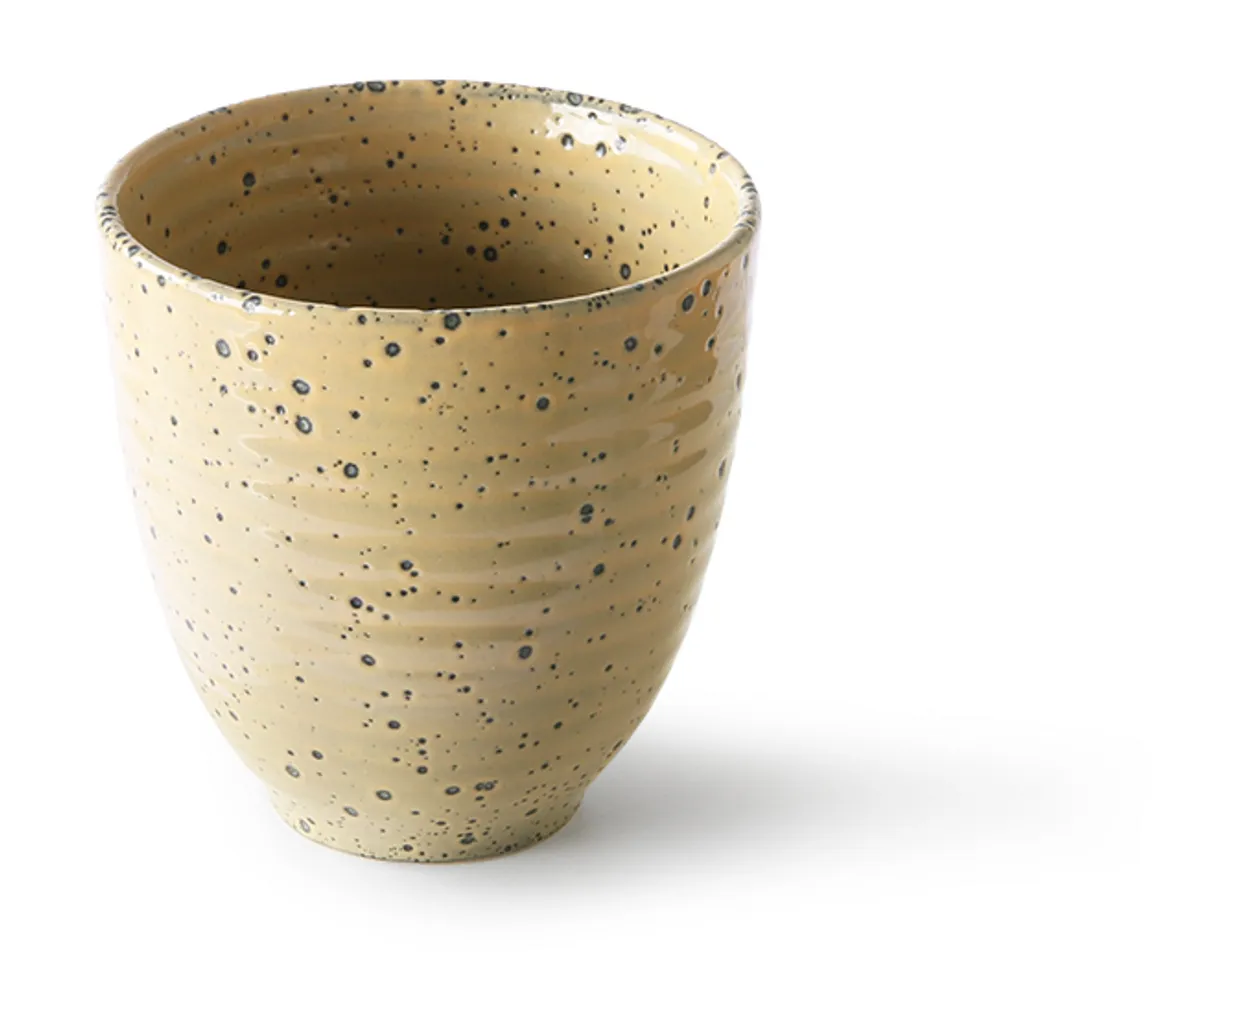 Gradient ceramics: mug peach (set of 4)